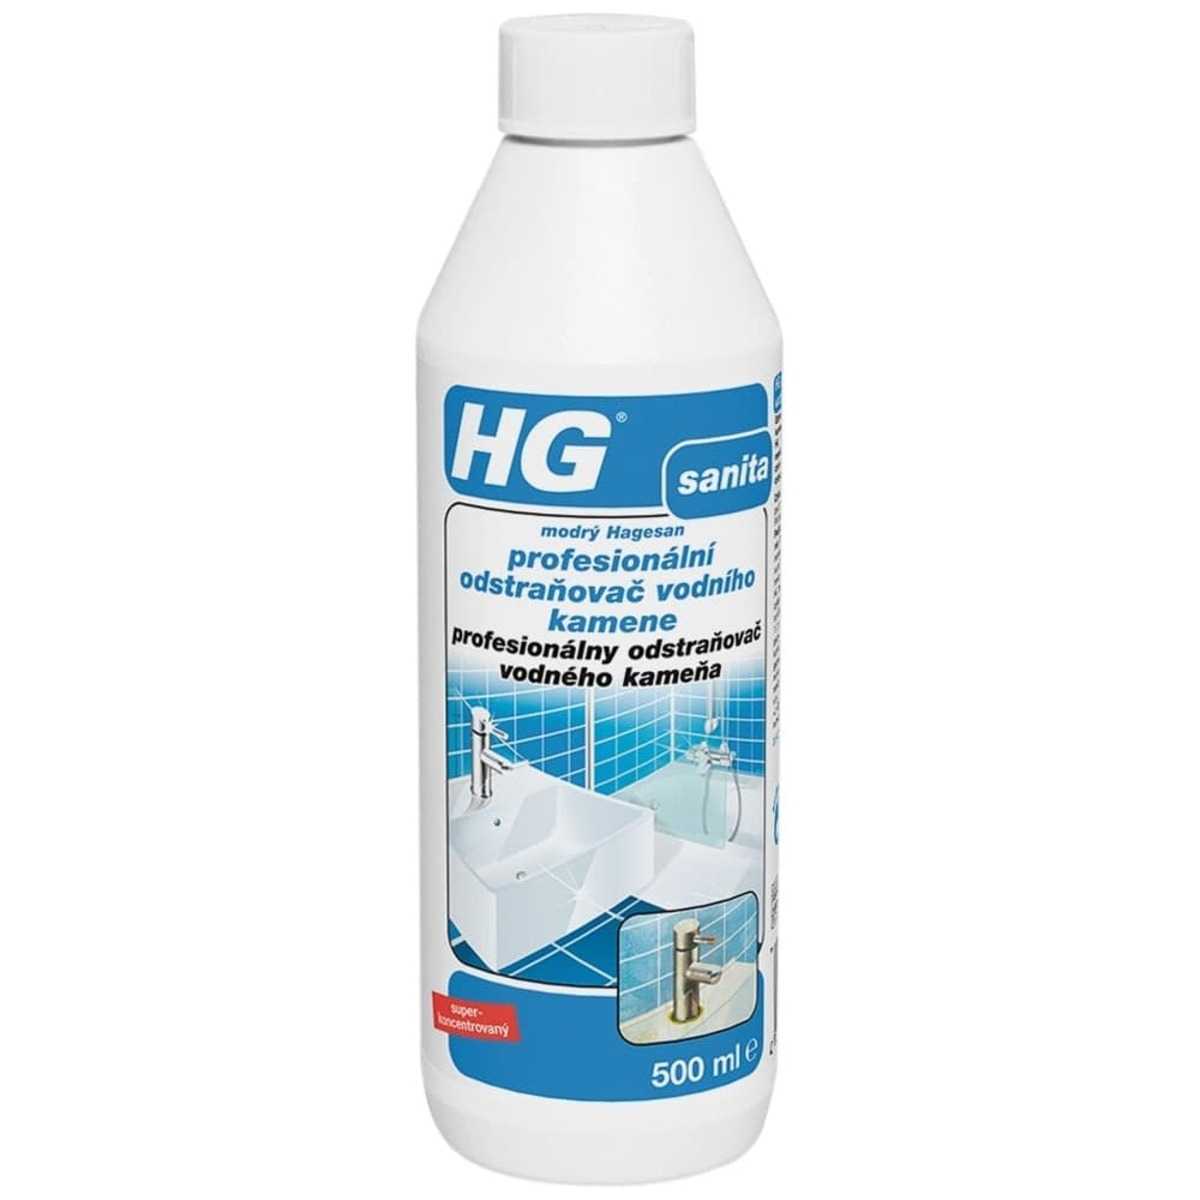 HG profesionální odstraňovač vodního kamene (modrý hagesan) HGMH HG